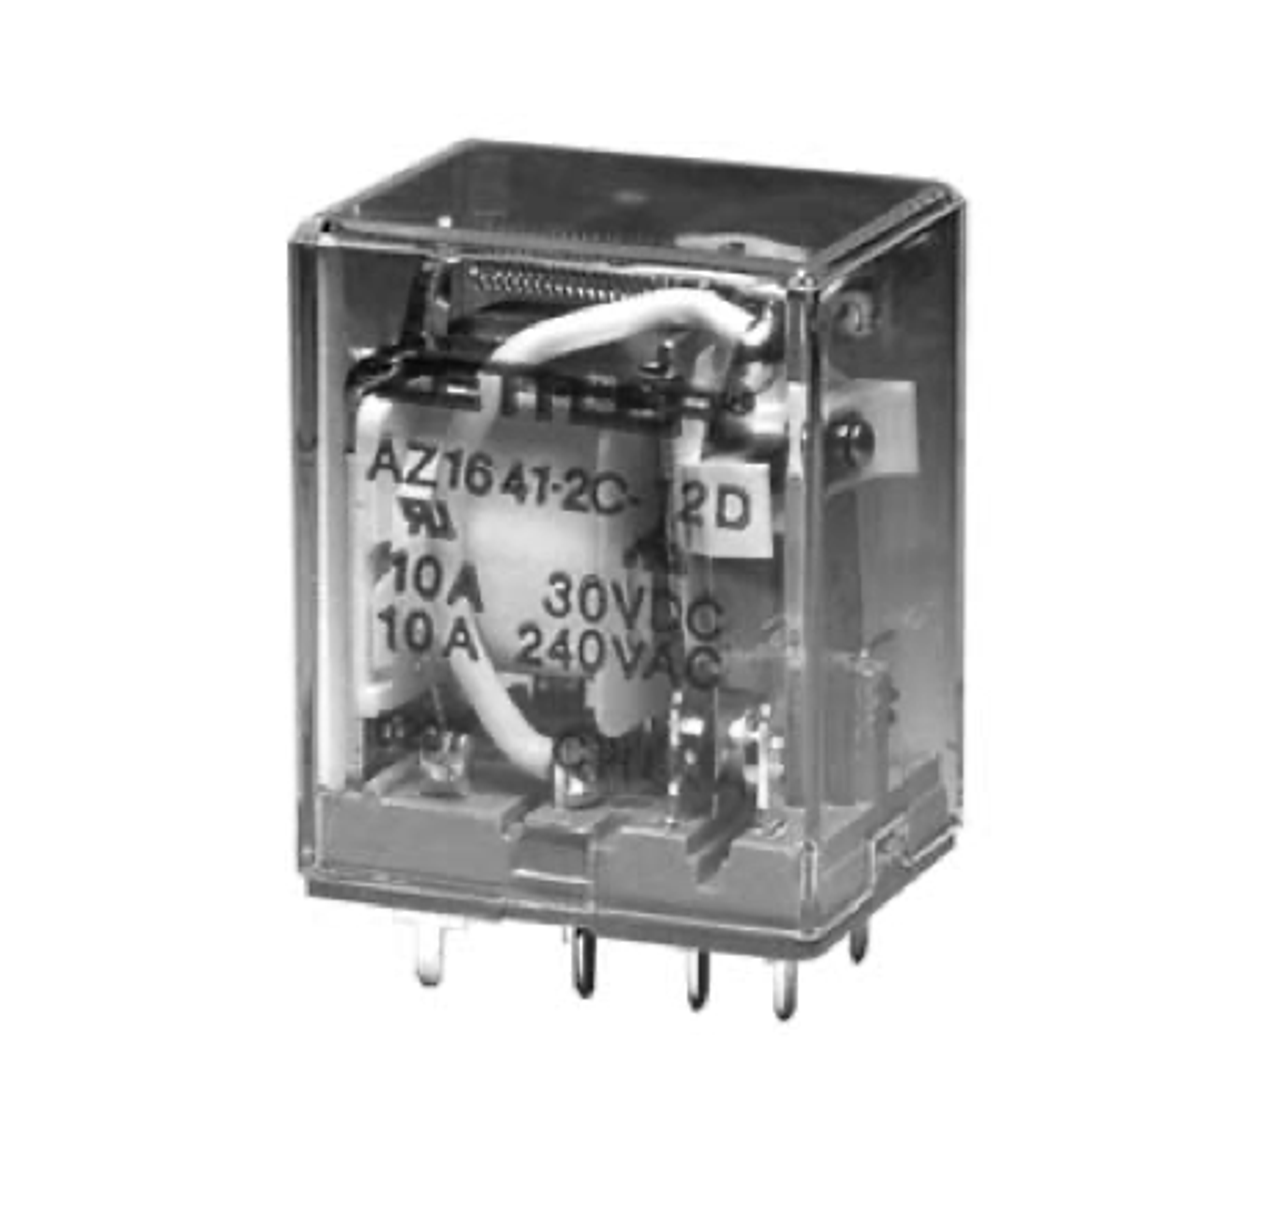 American Zettler AZ1641-3C-120A Power Relay